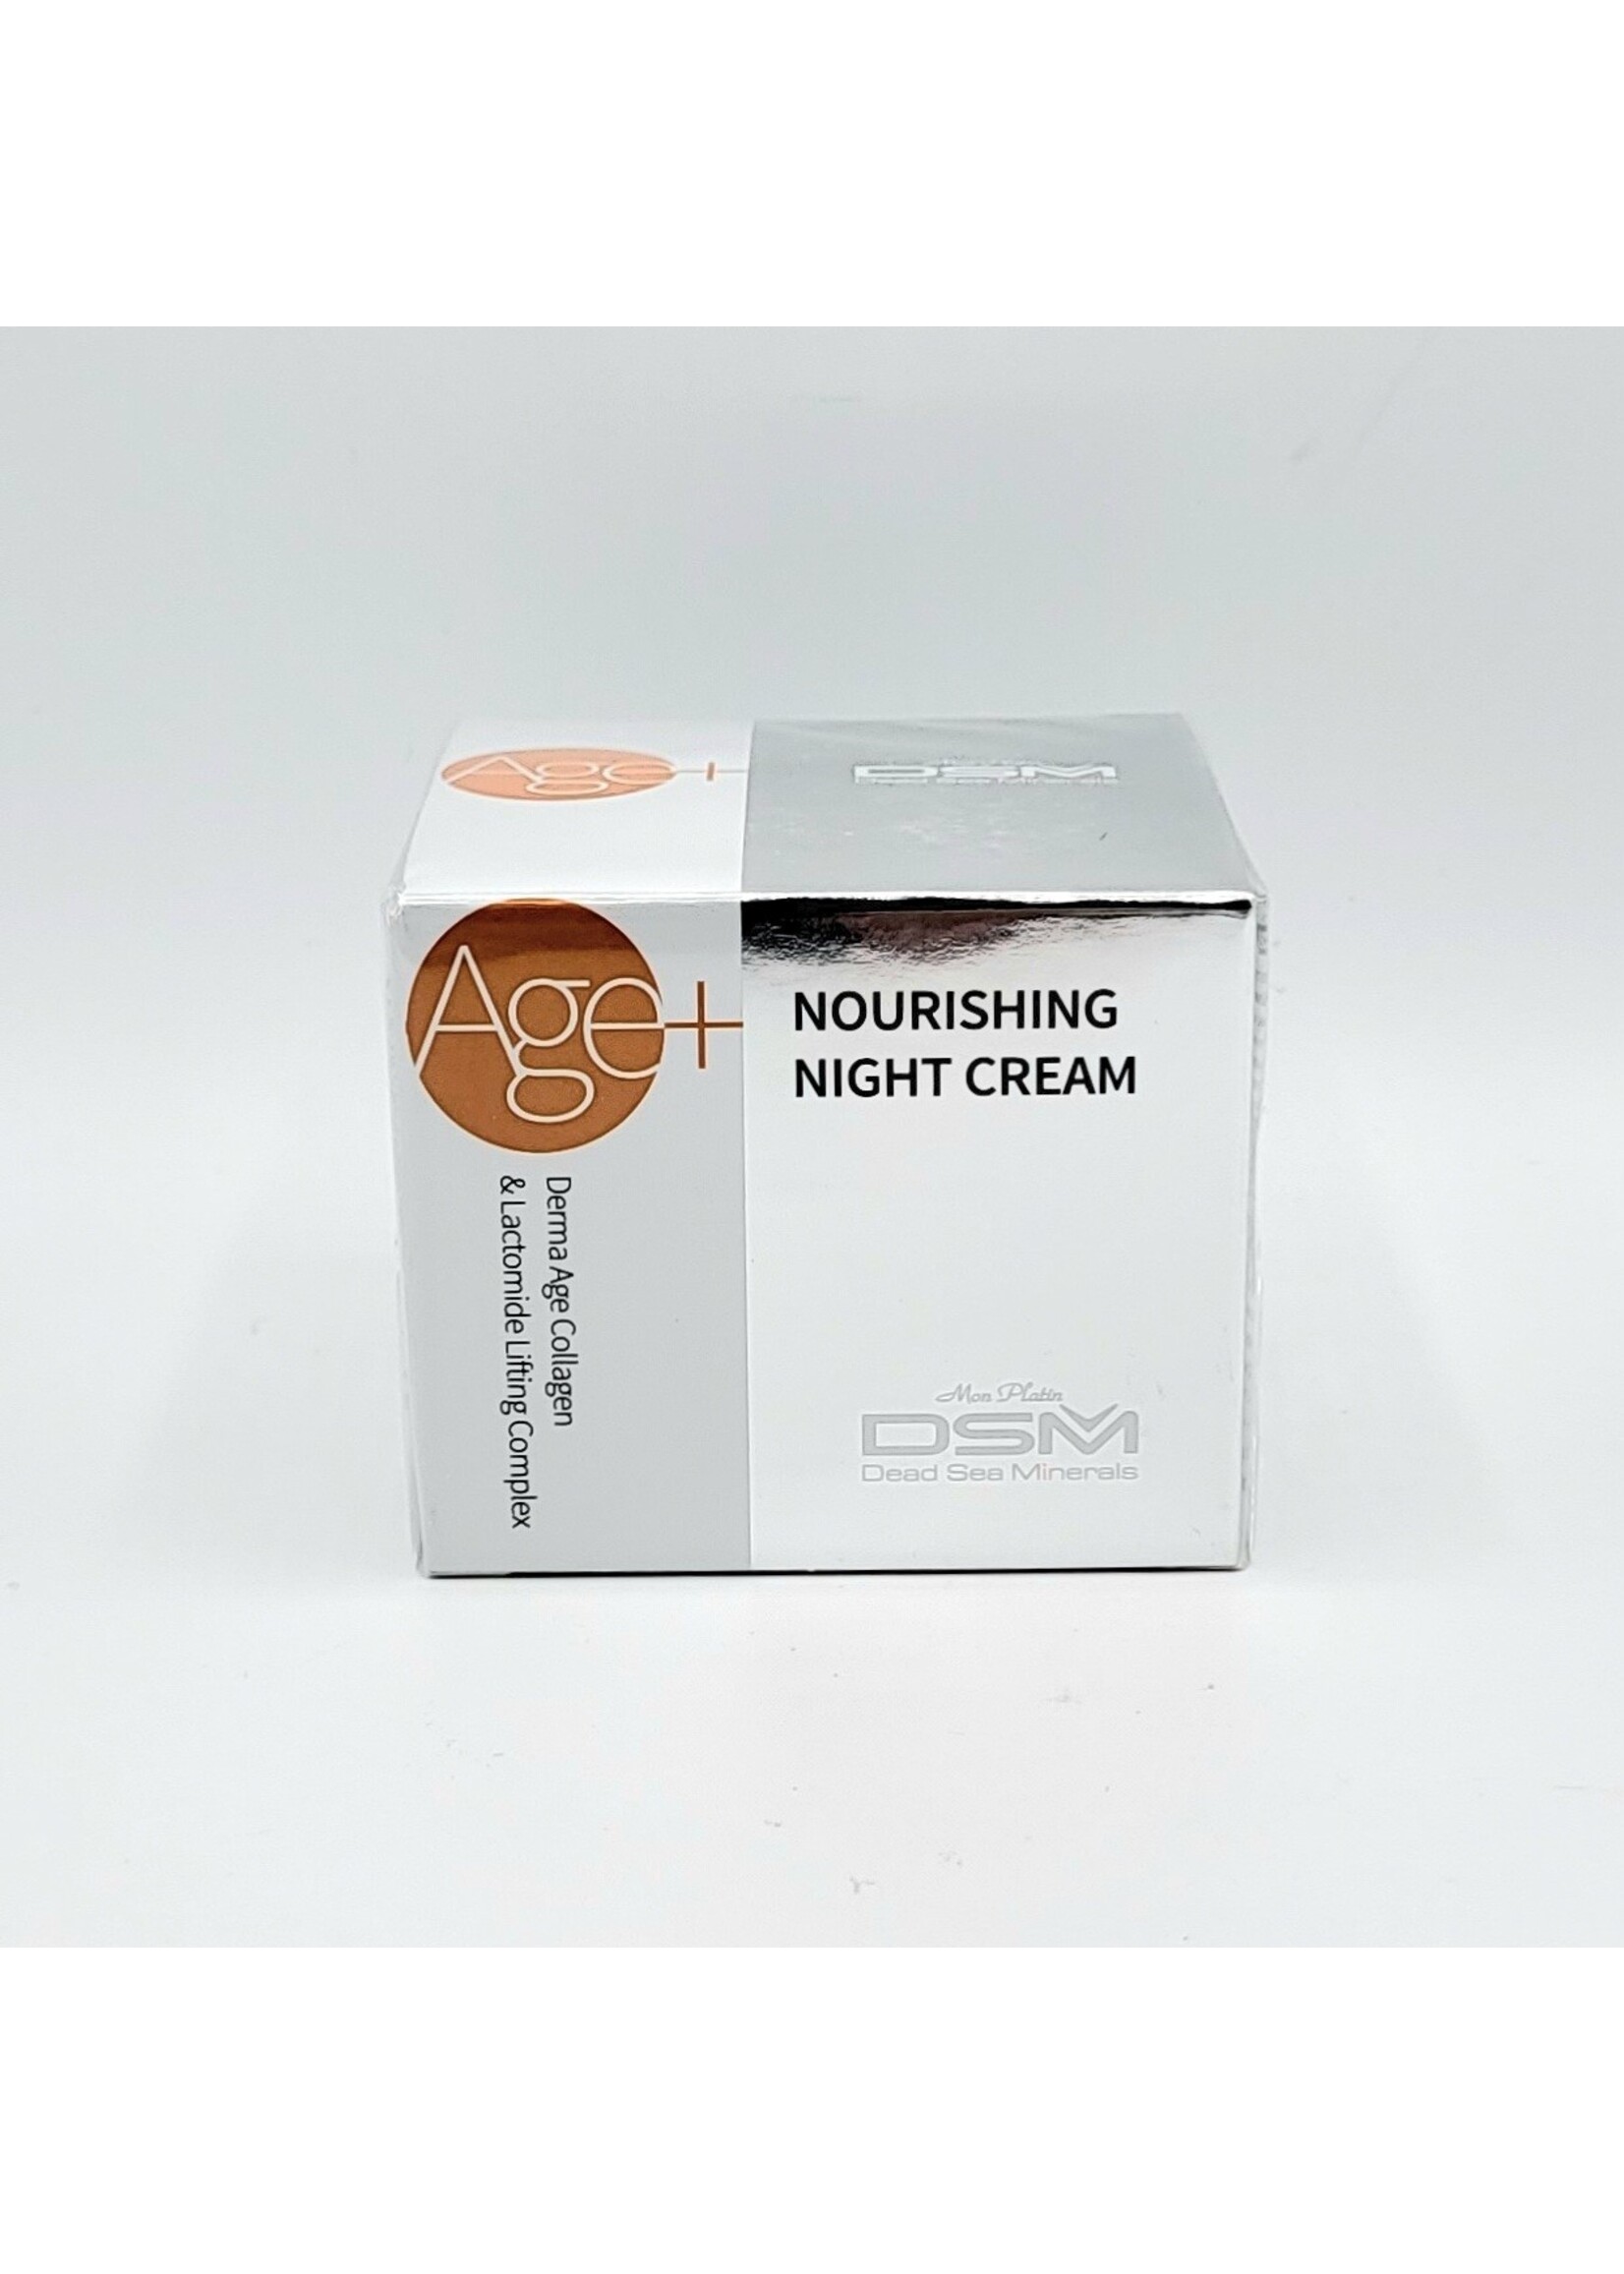 DSM Age+, Nourishing Night Cream